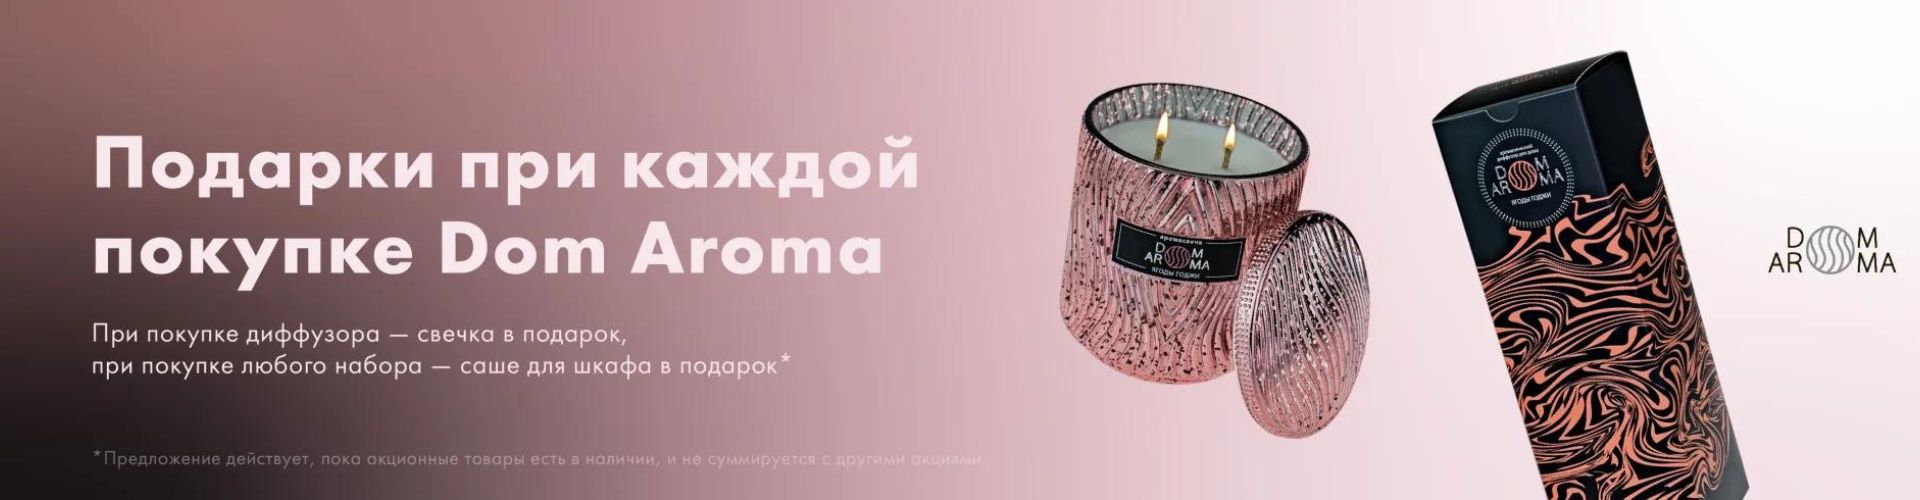 Подарки при каждой покупке Dom Aroma в Evita